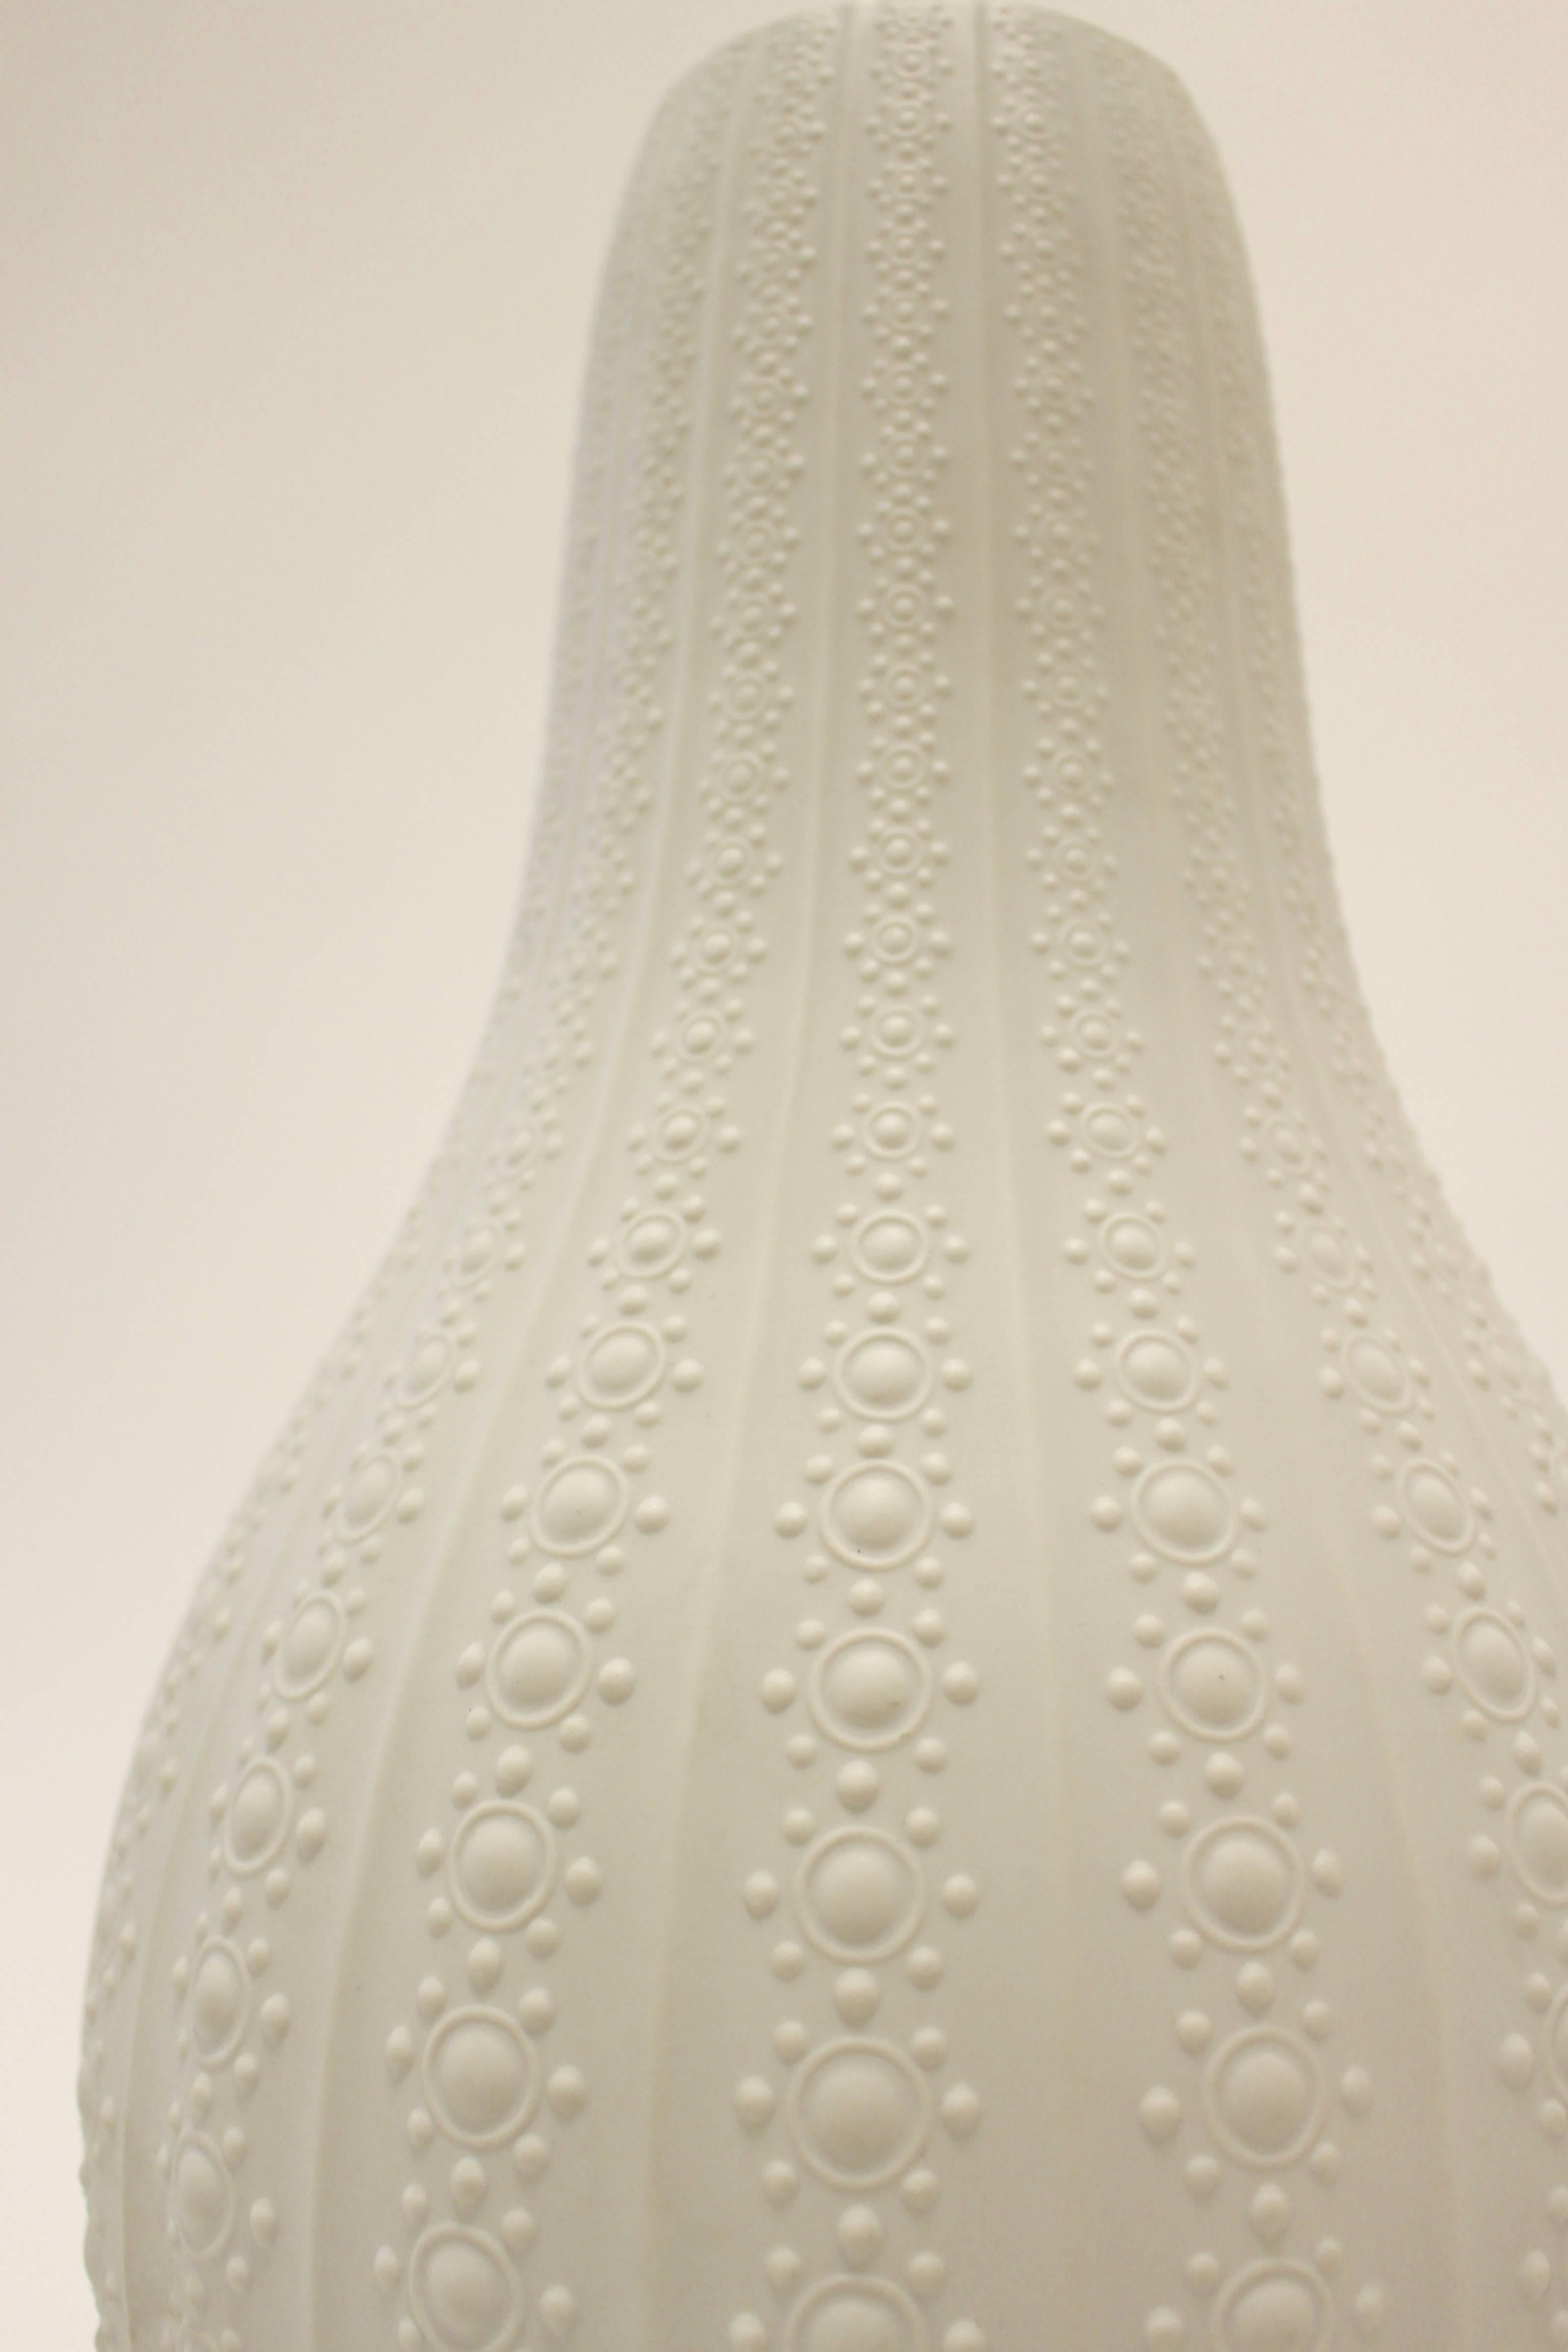 Eine süddeutsche Bodenvase aus mattweißem Porzellan mit Reliefdekor von Heinrich und Co. Diese raffinierte kürbisförmige Vase zeigt erhabene geometrische Motive aus kreisförmigen Punkten, die zum Rand hin schrumpfen und durch zarte vertikale Rippen